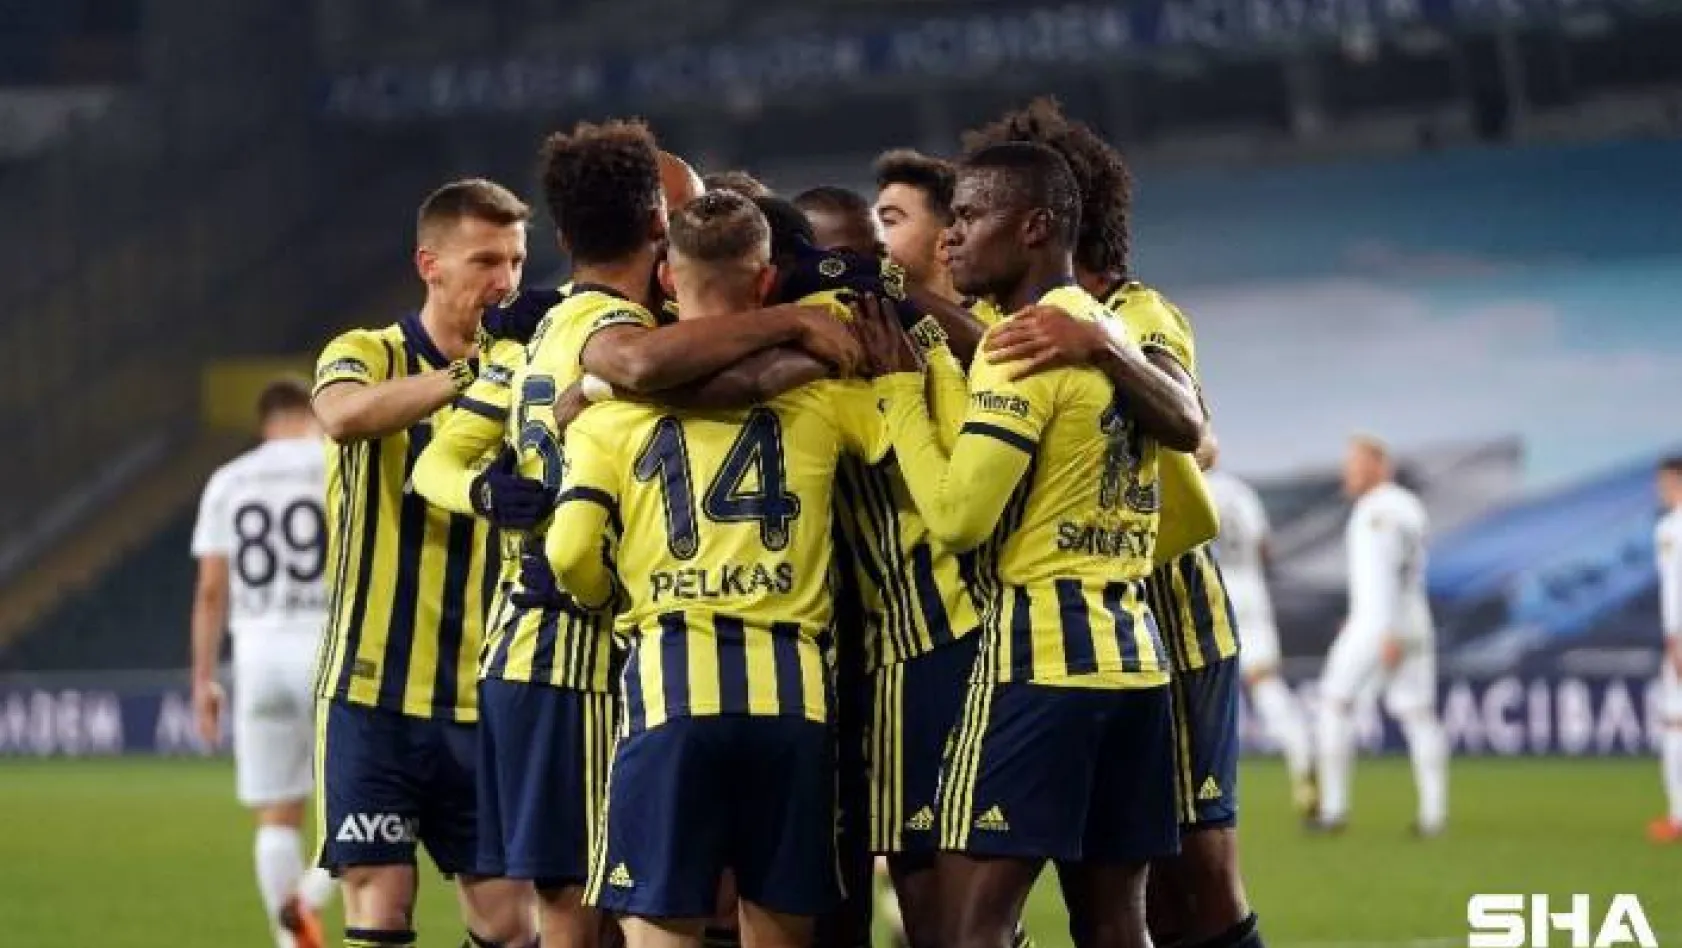 Süper Lig: Fenerbahçe: 2 - Ankaragücü: 0  (İlk yarı)